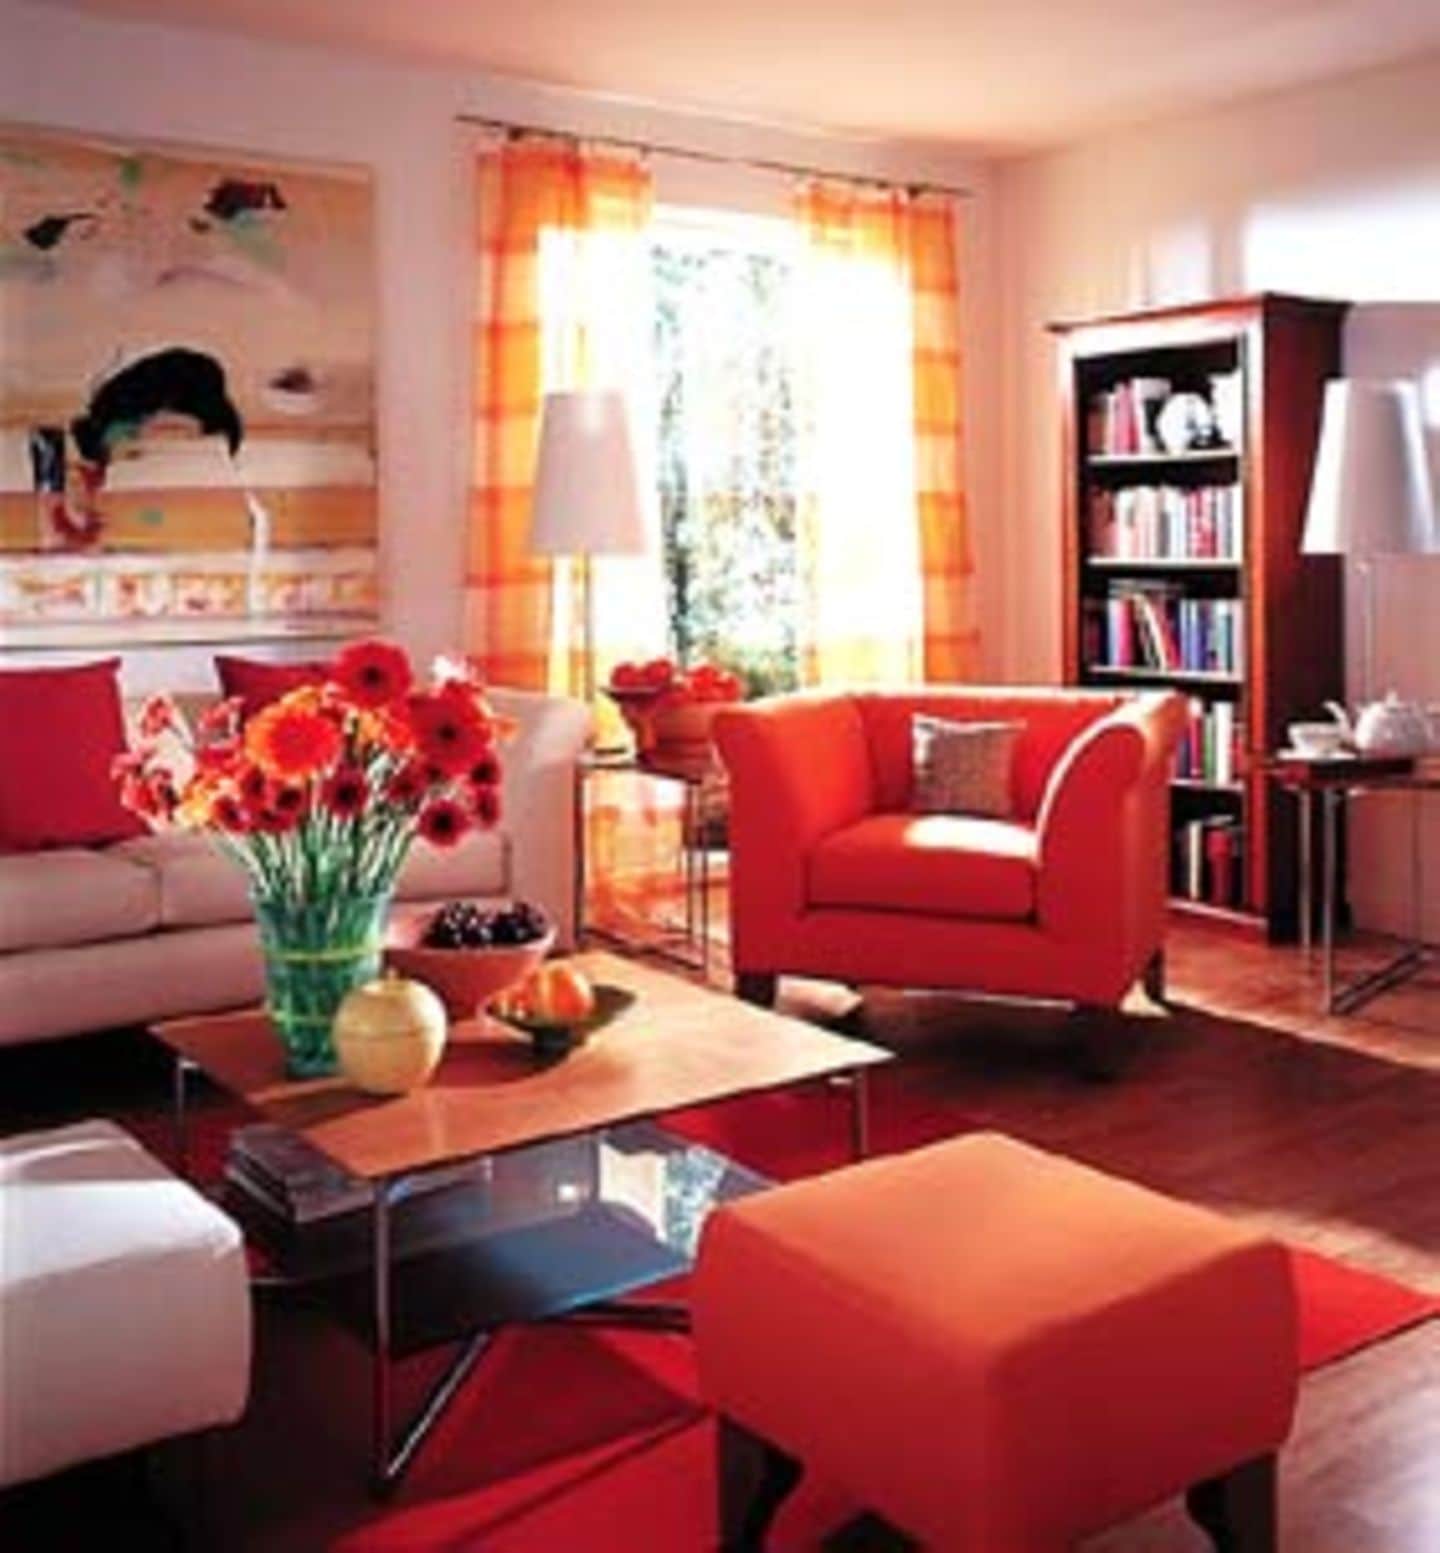 Kirschholz braucht zwei Dinge, um perfekt zu wirken: Warme Farben zur Unterstützung des Holztons und neutrale Farben, damit man im Raum auch noch Luft bekommt. Hier bilden Weiß an den Wänden und in den Sofas zusammen mit rot-orangen Tönen in Kissen, Sessel und Vorhängen die Kulisse für einen schönen Auftritt der klassischen Kirschholzmöbel.